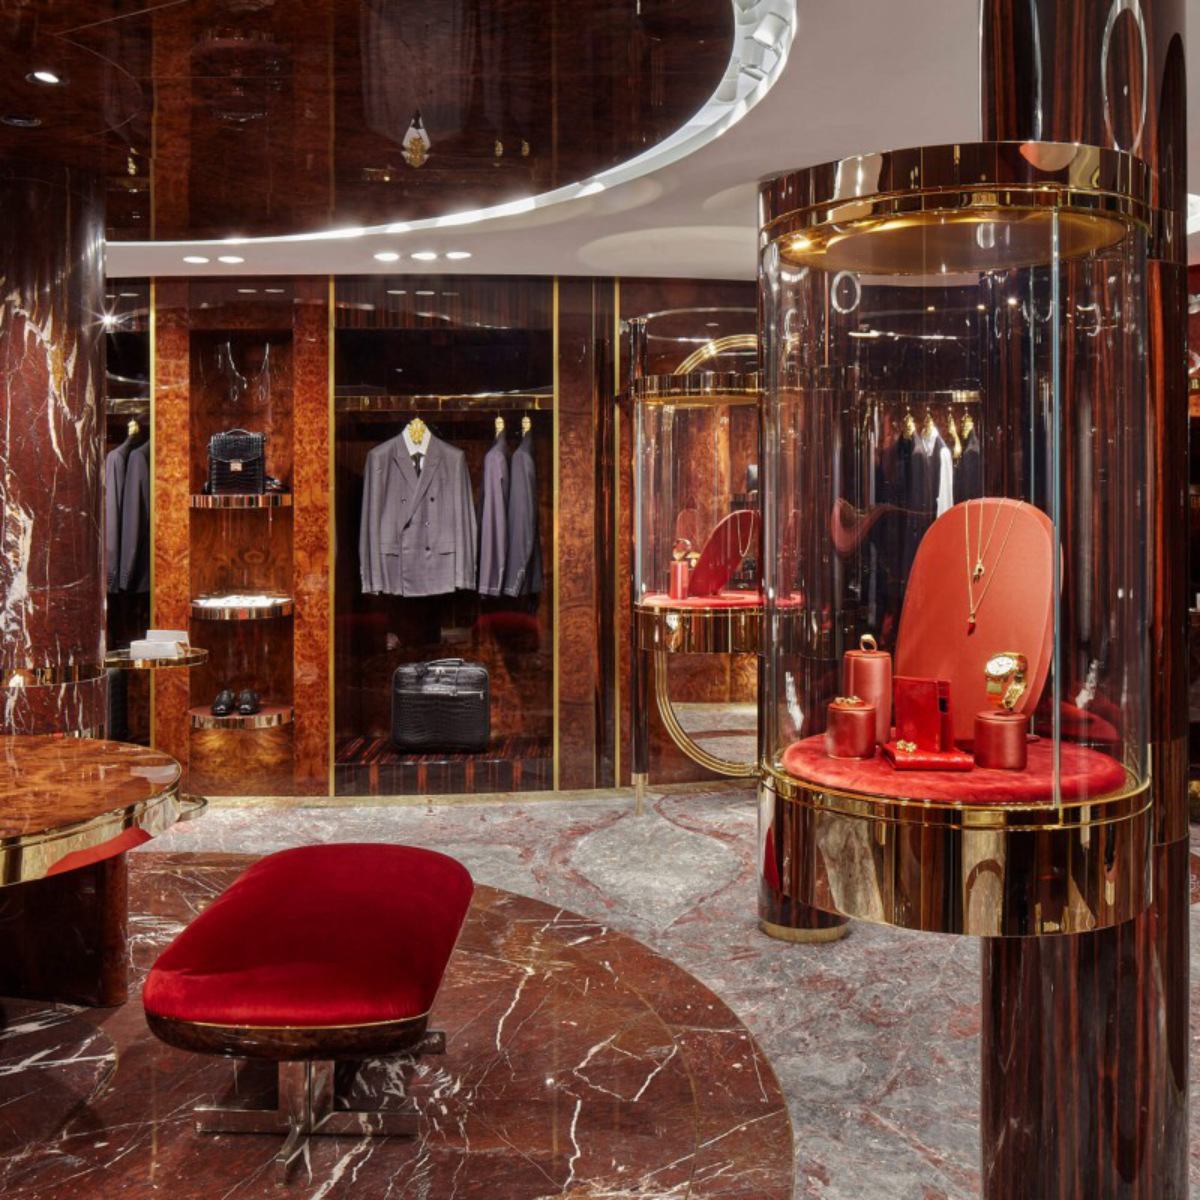 Dolce&Gabbana - Rue du Faubourg è – Paris – The Boutique -  Luxferity Magazine